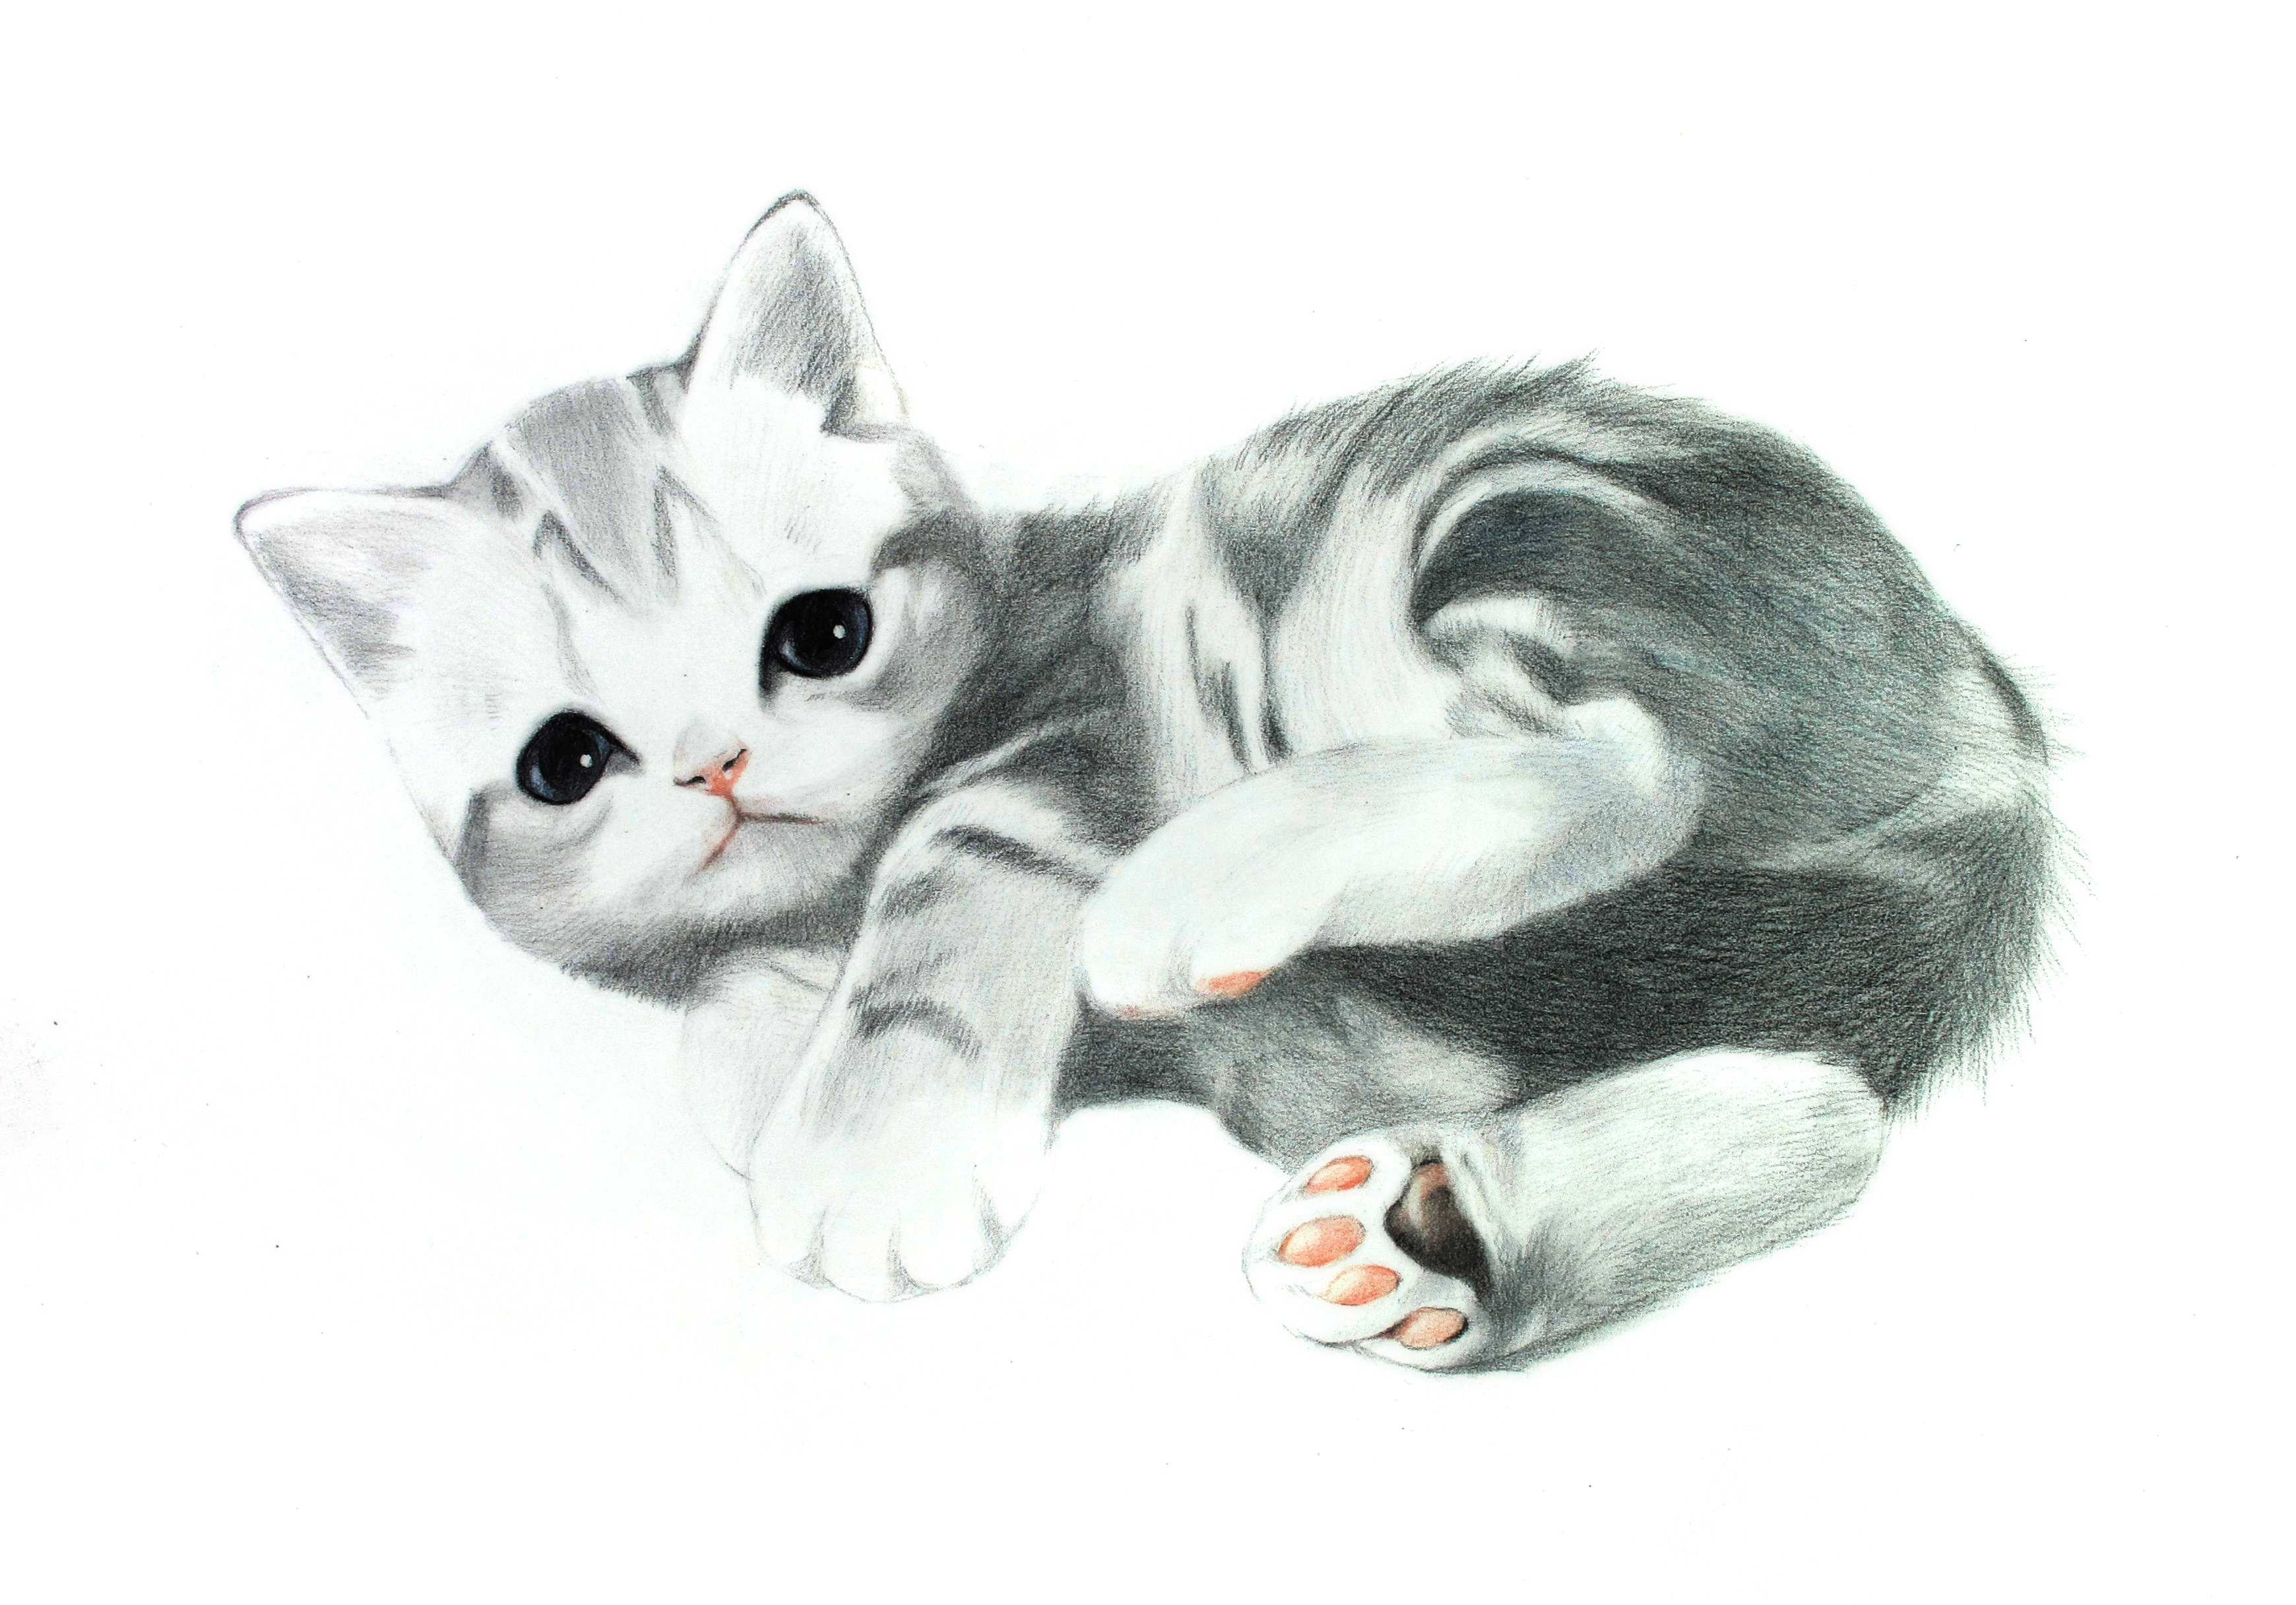 彩色铅笔画步骤教程:美国短毛猫的画法